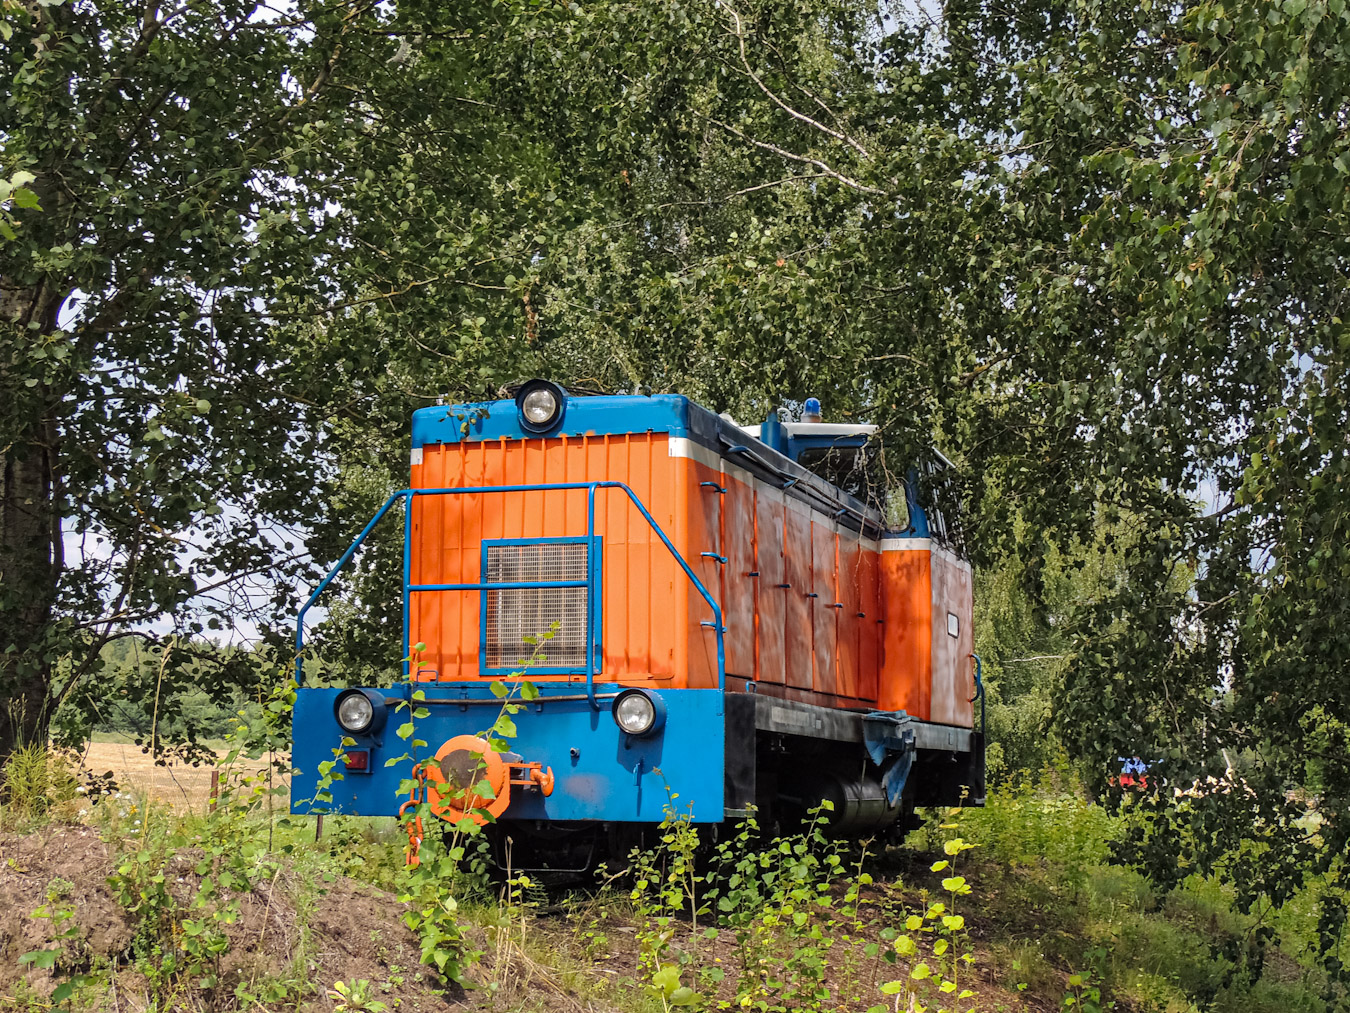 ТУ6МБ-0981; Фотозарисовки (Белорусская железная дорога)